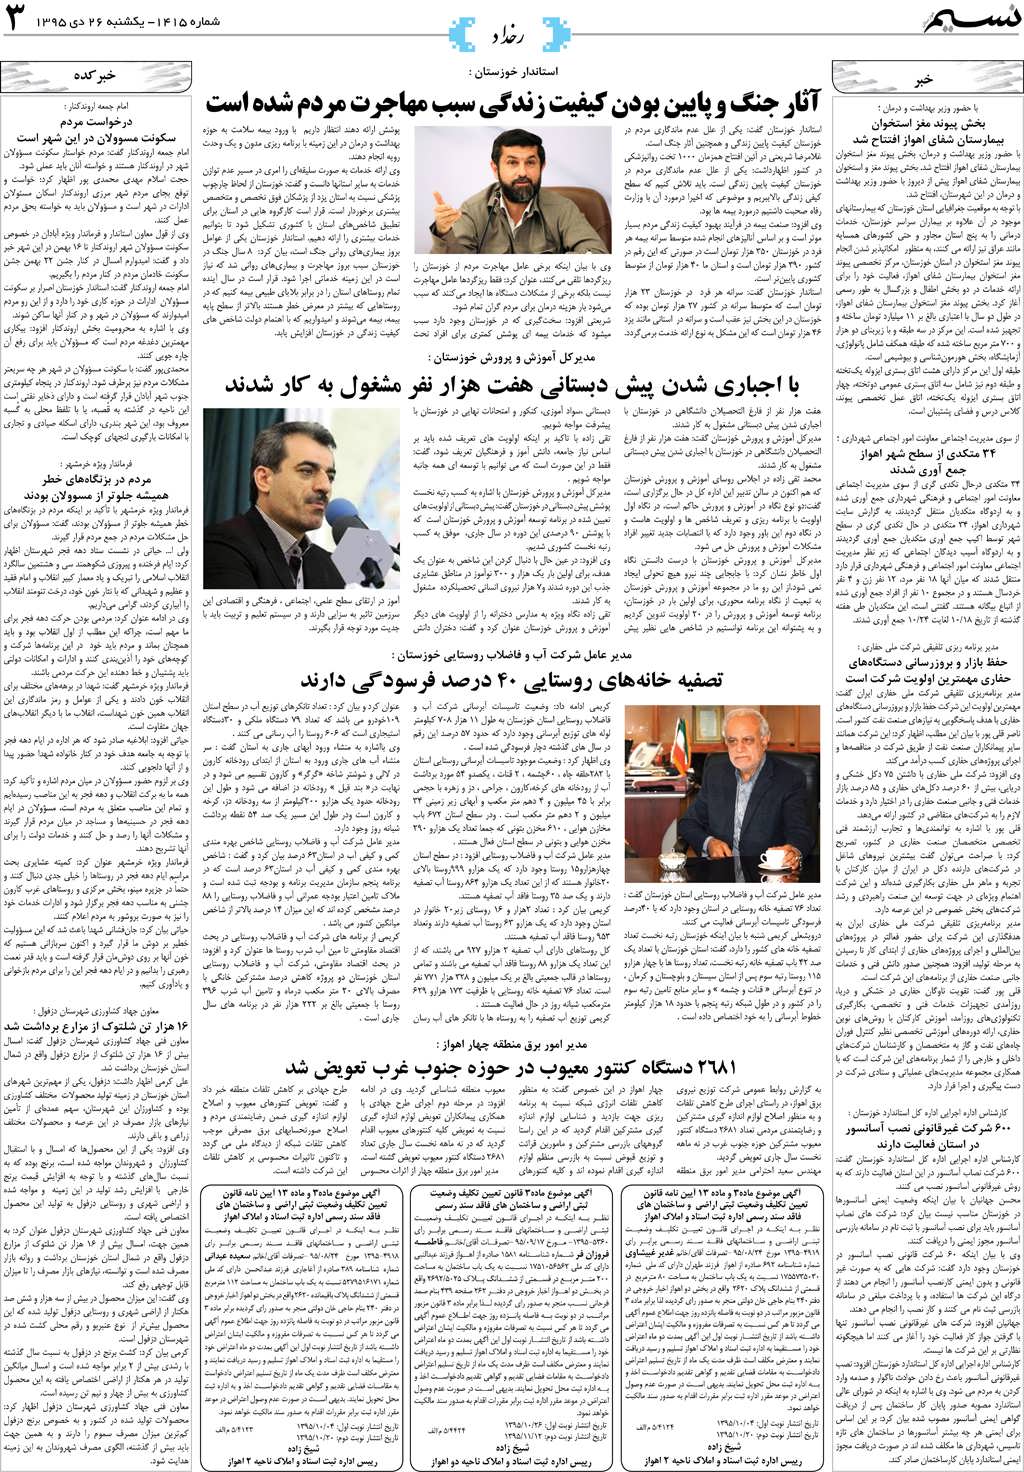 صفحه رخداد روزنامه نسیم شماره 1415